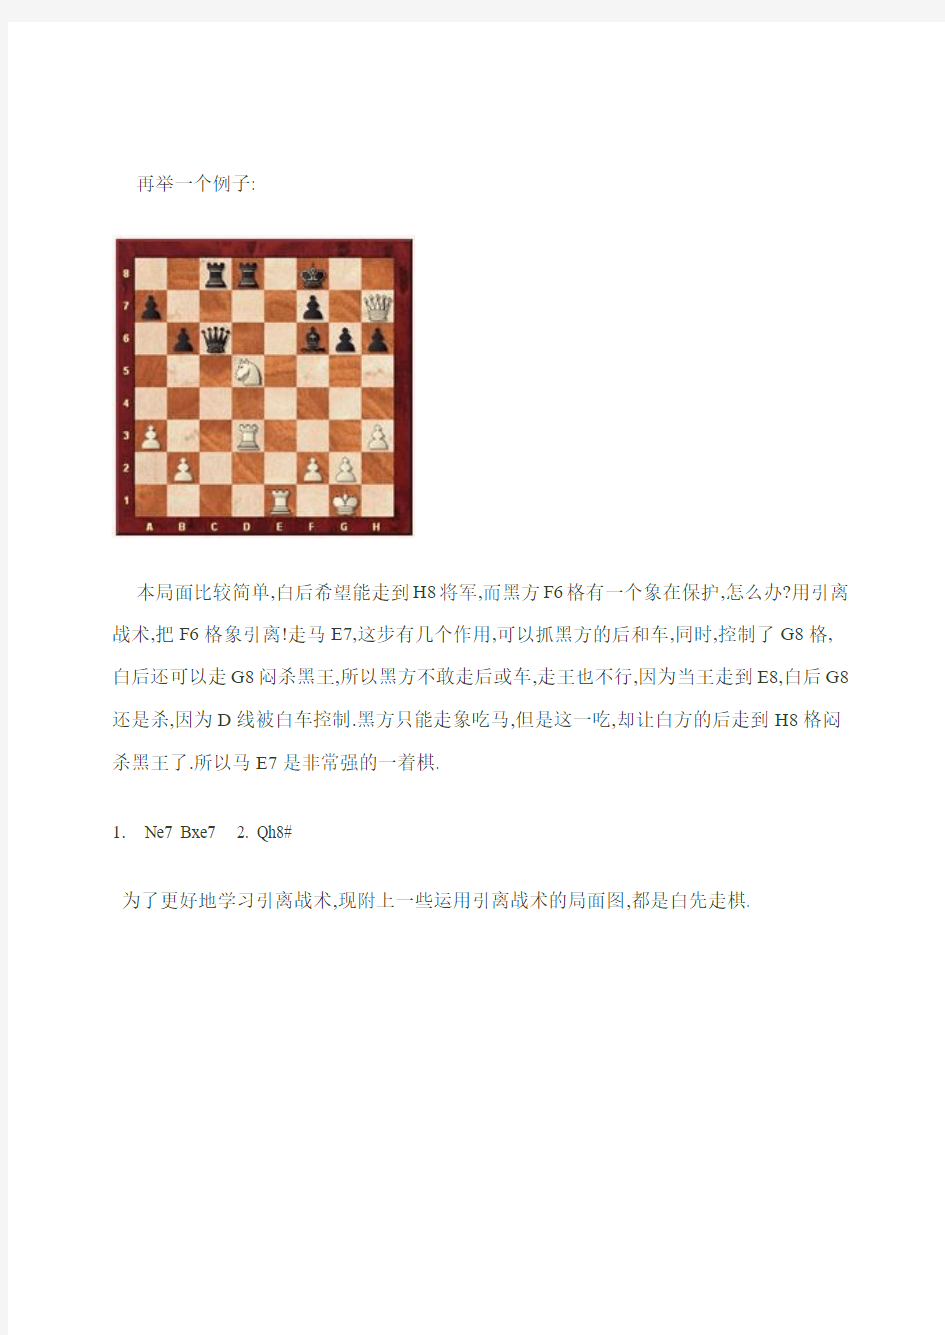 国际象棋战术分解八